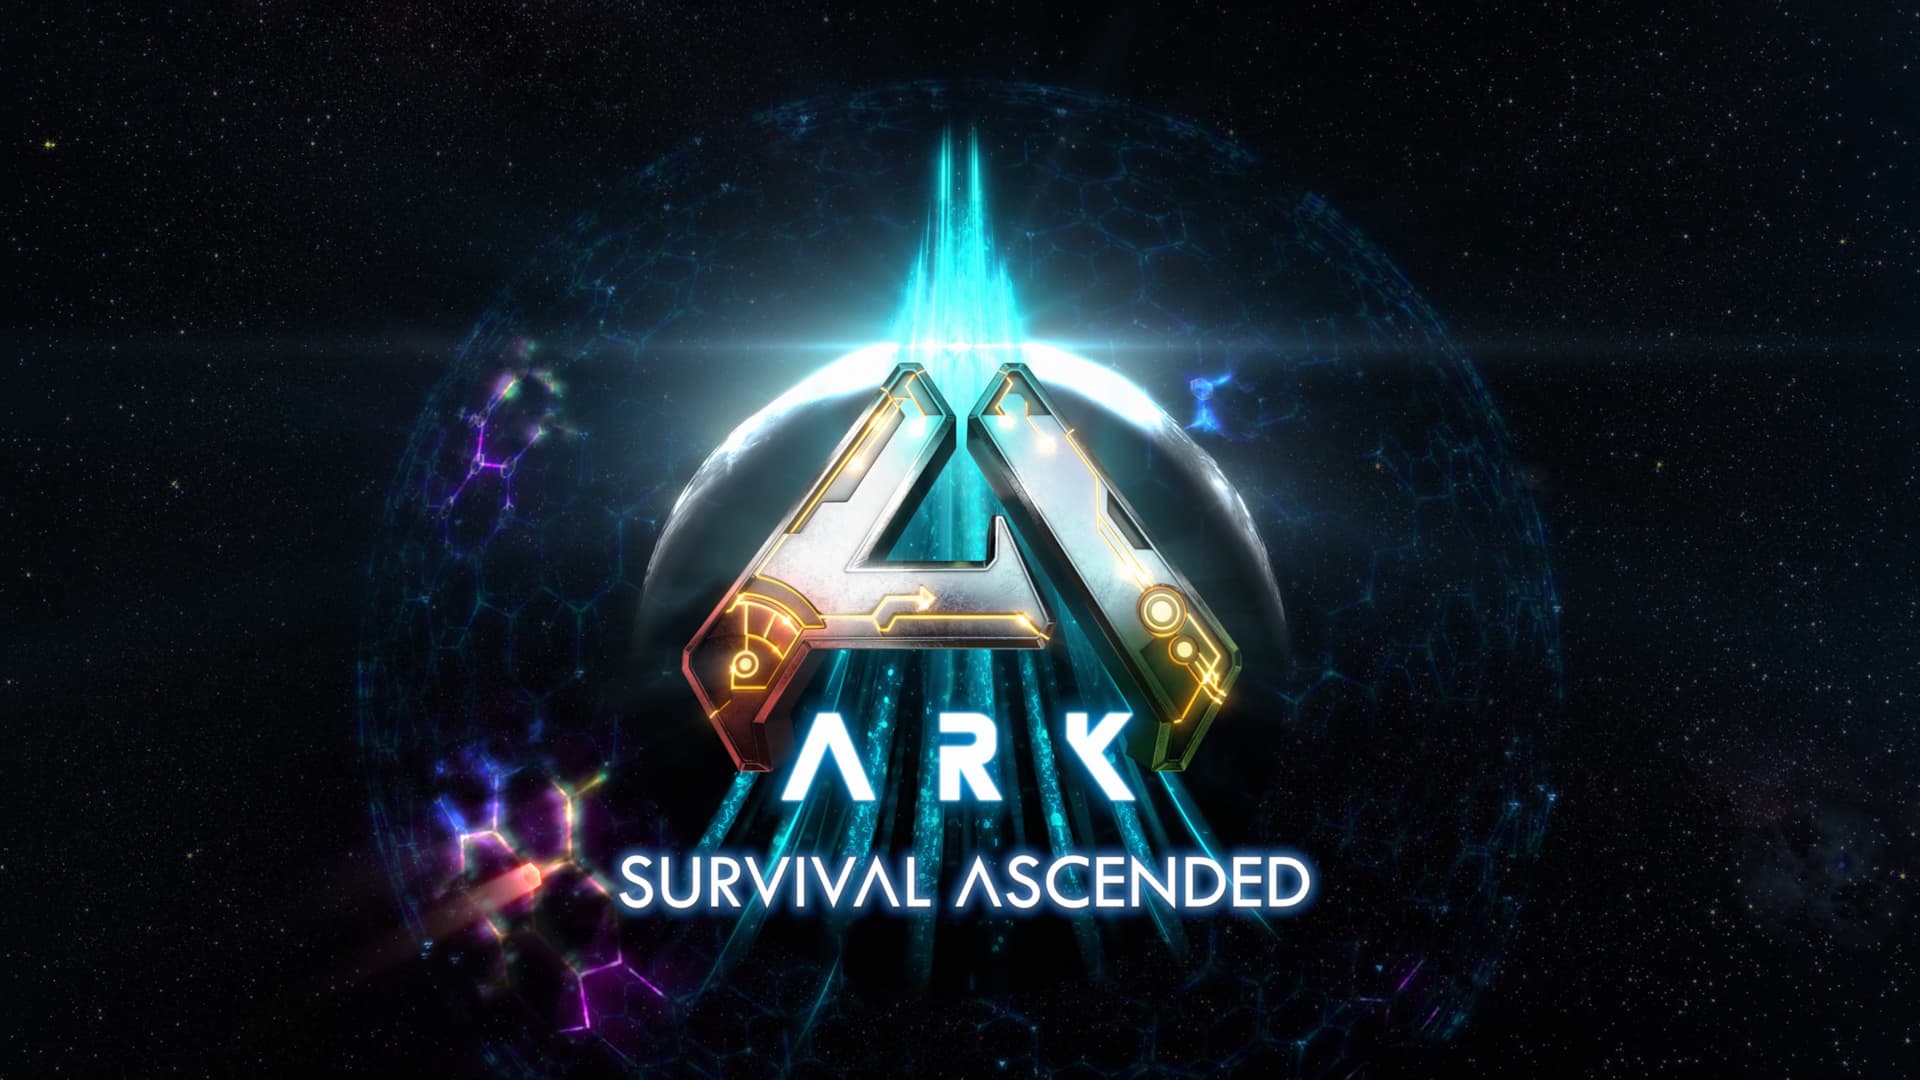 Meu PC roda Ark Survival Ascended? Veja hardware necessário